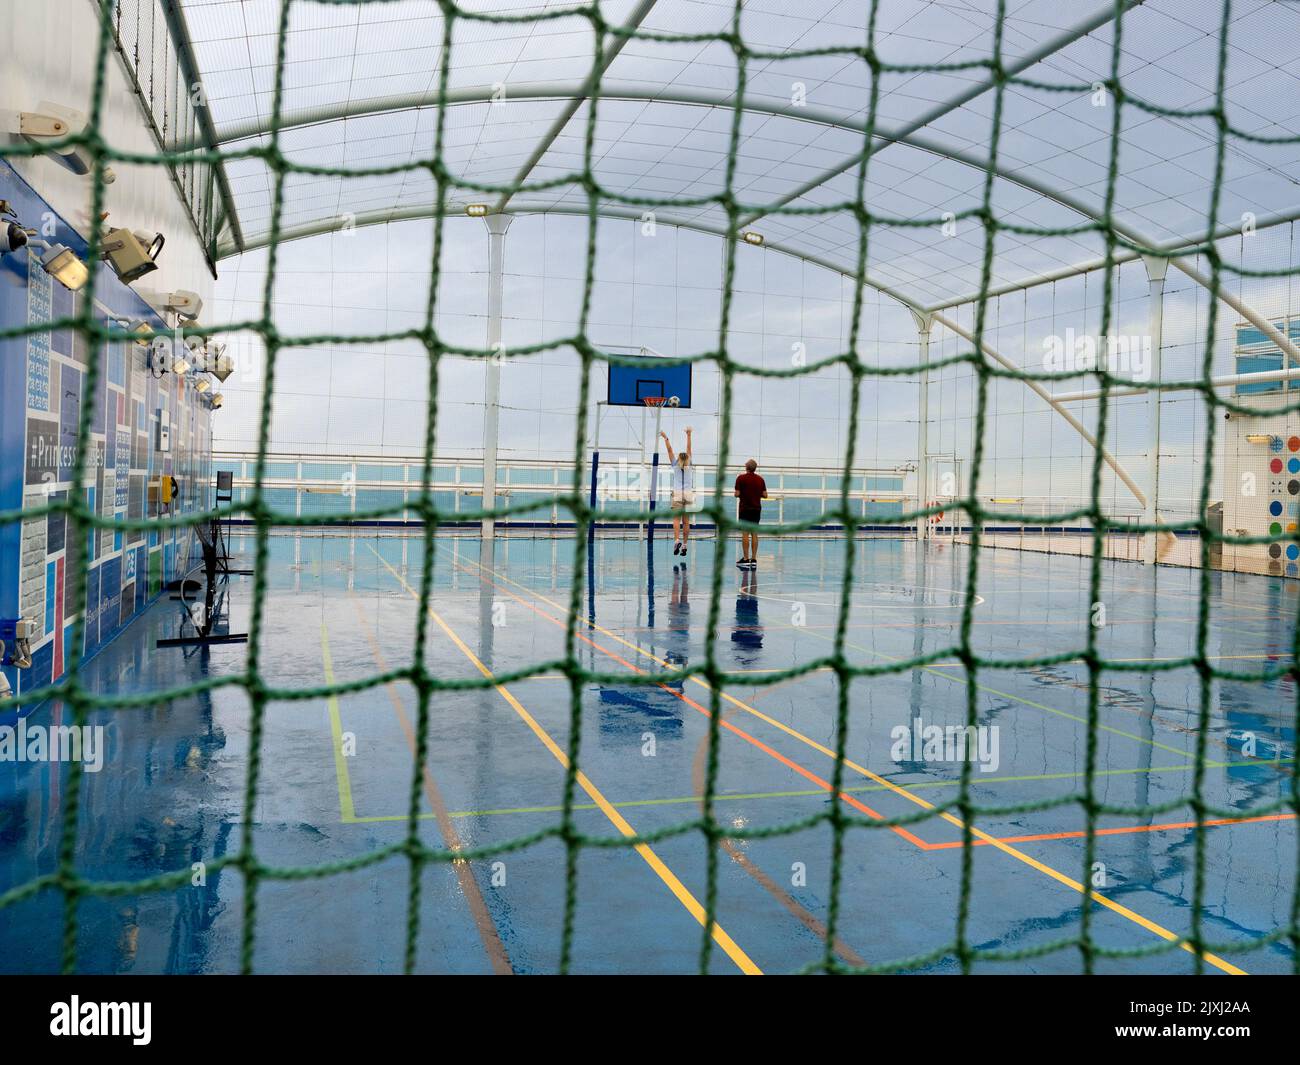 Es un día de navegación mojado en un crucero en el Mar del Norte. Entonces, ¿qué mejor cosa a hacer que una cierta práctica del baloncesto... realmente? Tal agudeza. Foto de stock